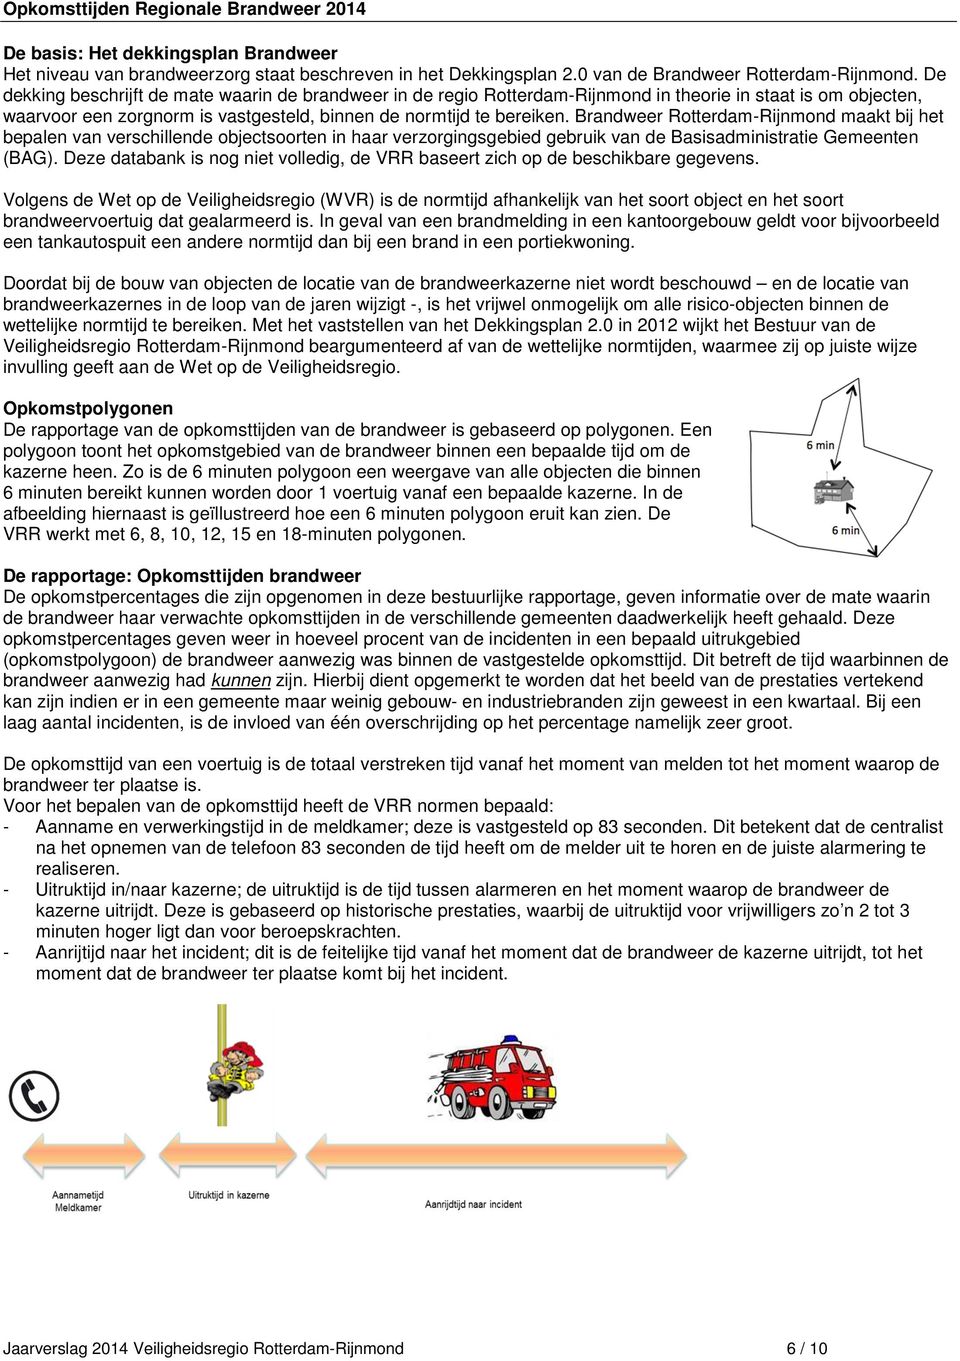 Brandweer Rotterdam-Rijnmond maakt bij het bepalen van verschillende objectsoorten in haar verzorgingsgebied gebruik van de Basisadministratie Gemeenten (BAG).